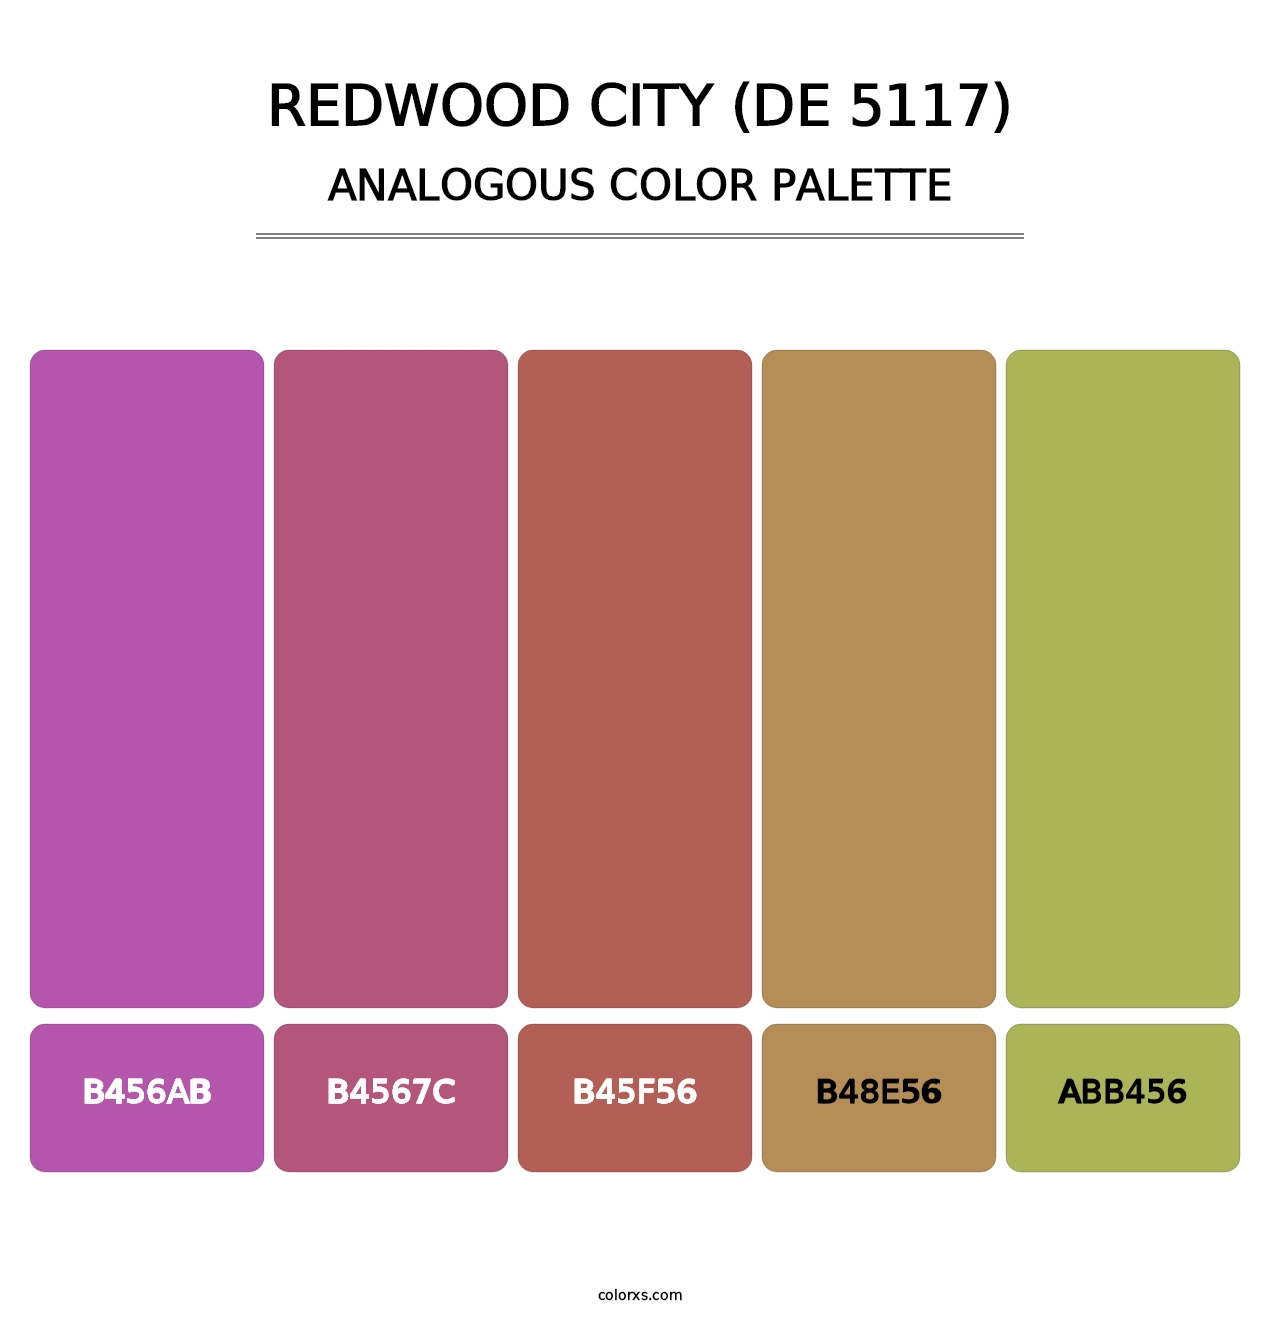 Redwood City (DE 5117) - Analogous Color Palette